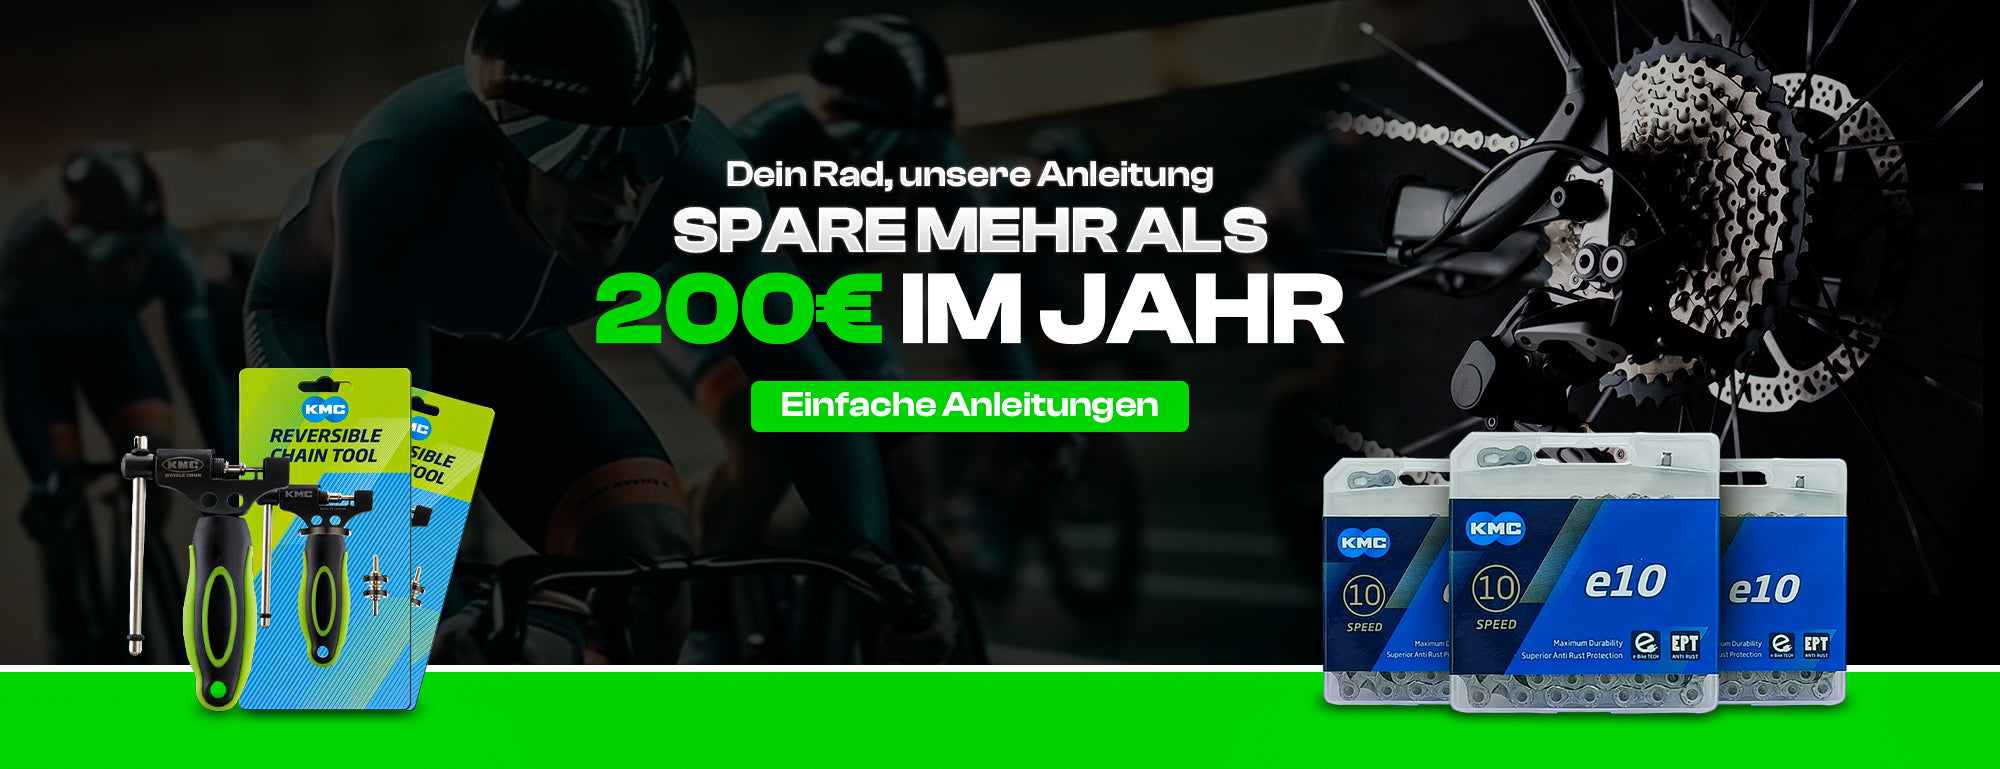 Bavarian-Bike fahrradteilehandel aus bayern. meine anleitungen und du sparst mehr als 200 € im jahr